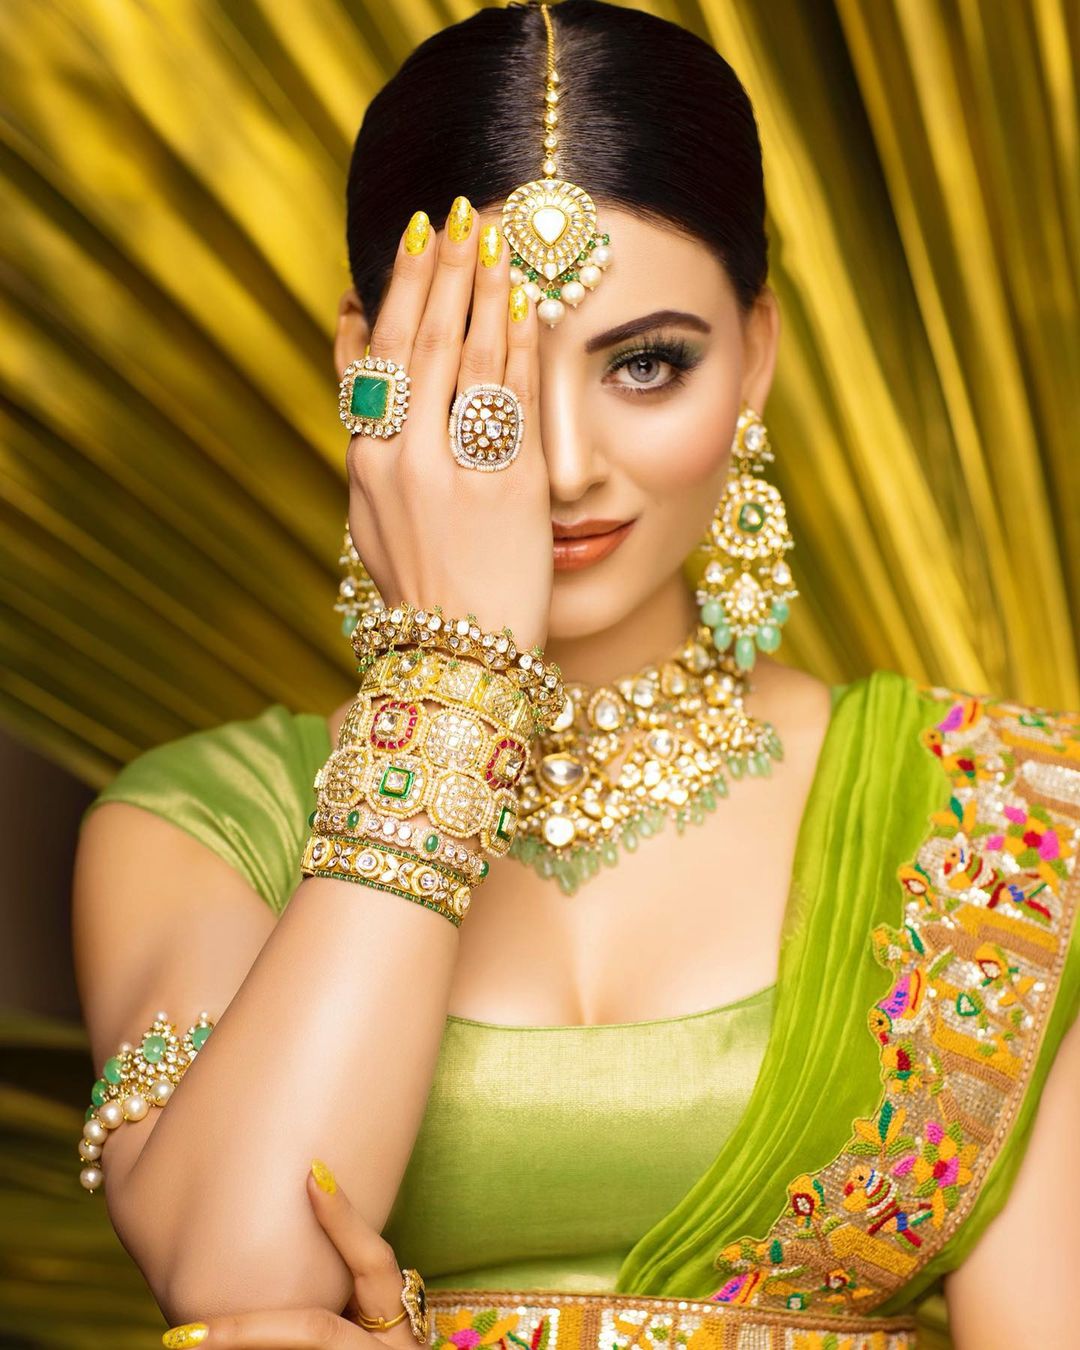 Urvashi Rautela Bandhani Lehenga And Heavy Jewellery Look Worth 62 Lakhs Goes Viral Over Social Media | In Pics: उर्वशी रौतेला के 62 लाख की राजस्थानी बंधनी लहंगा और ज्वैलरी ने सबको